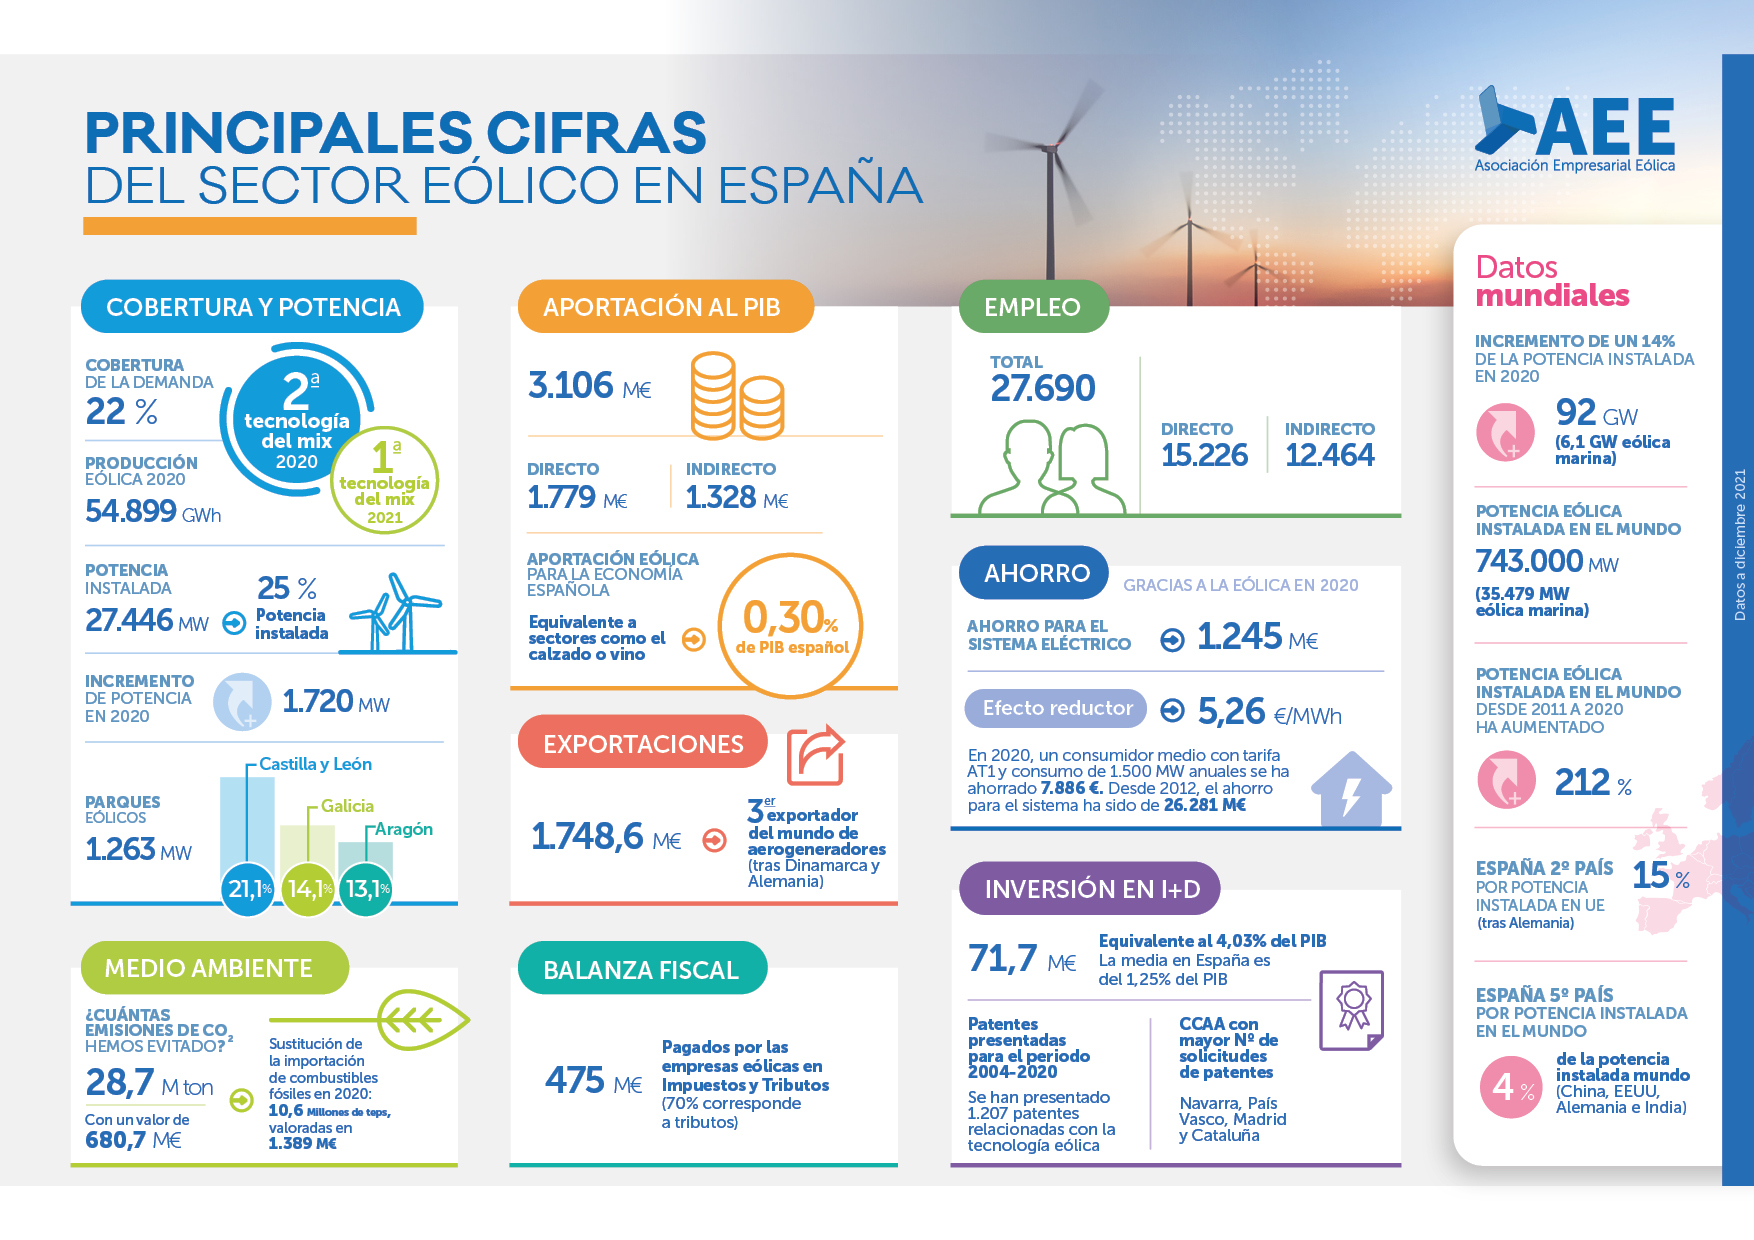 La eólica es uno de los principales motores del crecimiento económico en España y ya es la primera tecnología del sistema eléctrico en nuestro país